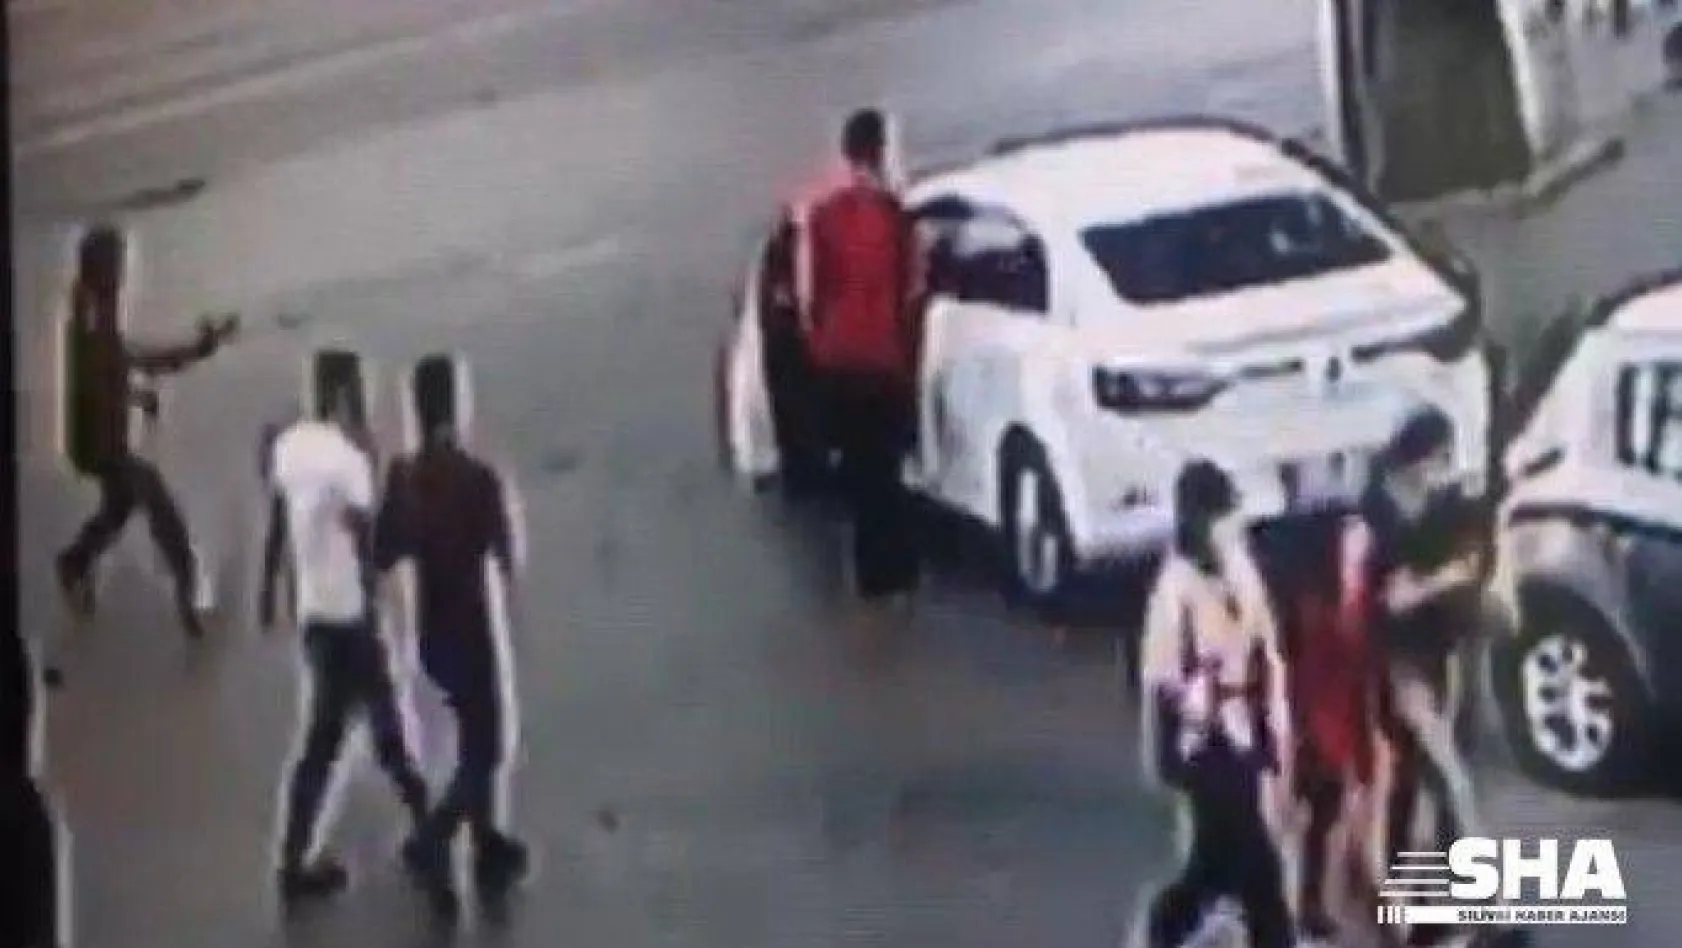 Fatih'te cami çıkışı silahlı saldırı kamerada